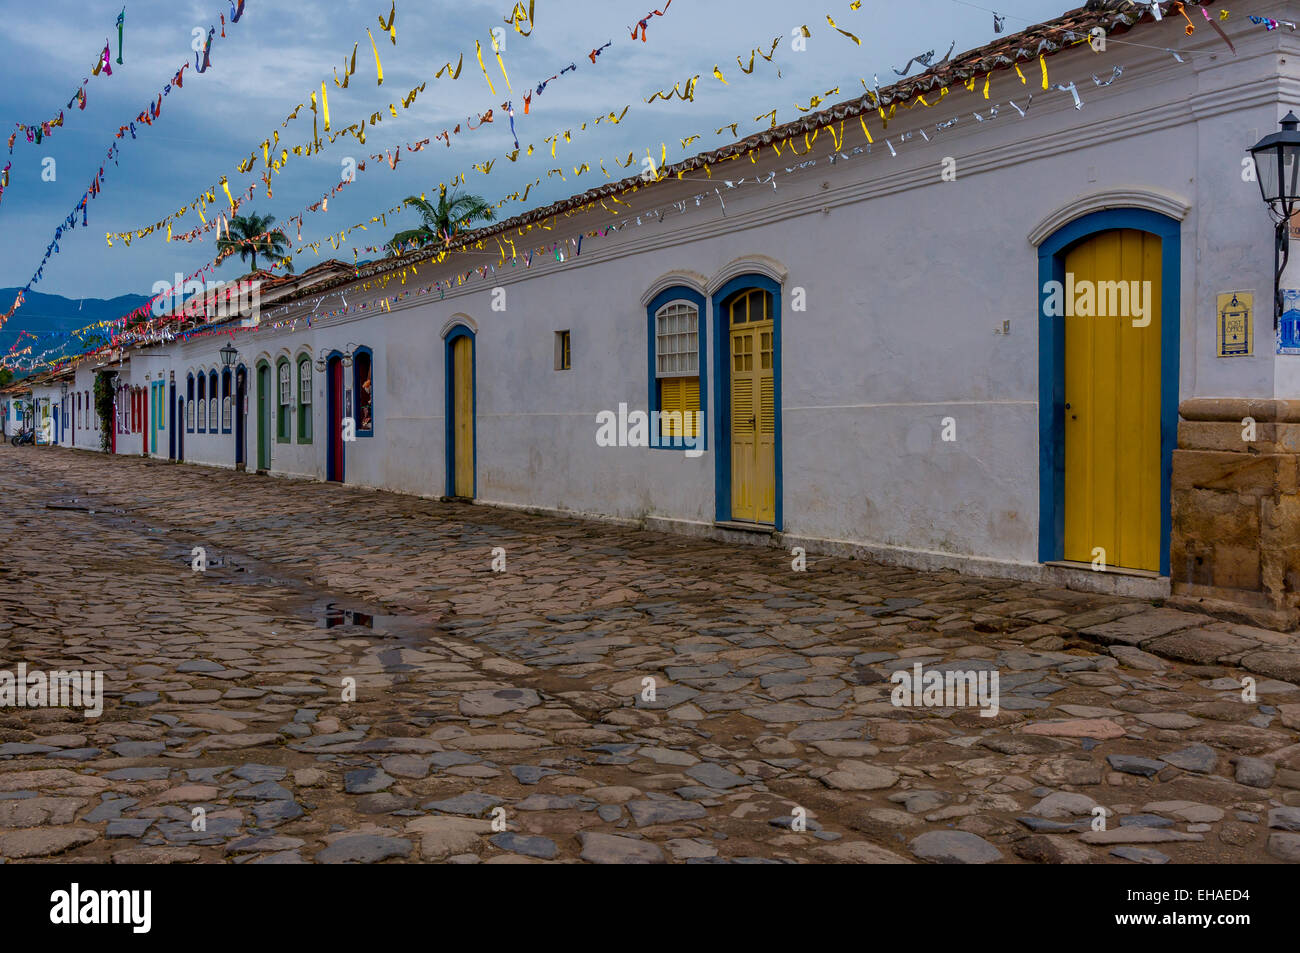 Maisons colorées à Paraty - une ville coloniale dans l'Etat de Rio de Janeiro, Brésil Banque D'Images